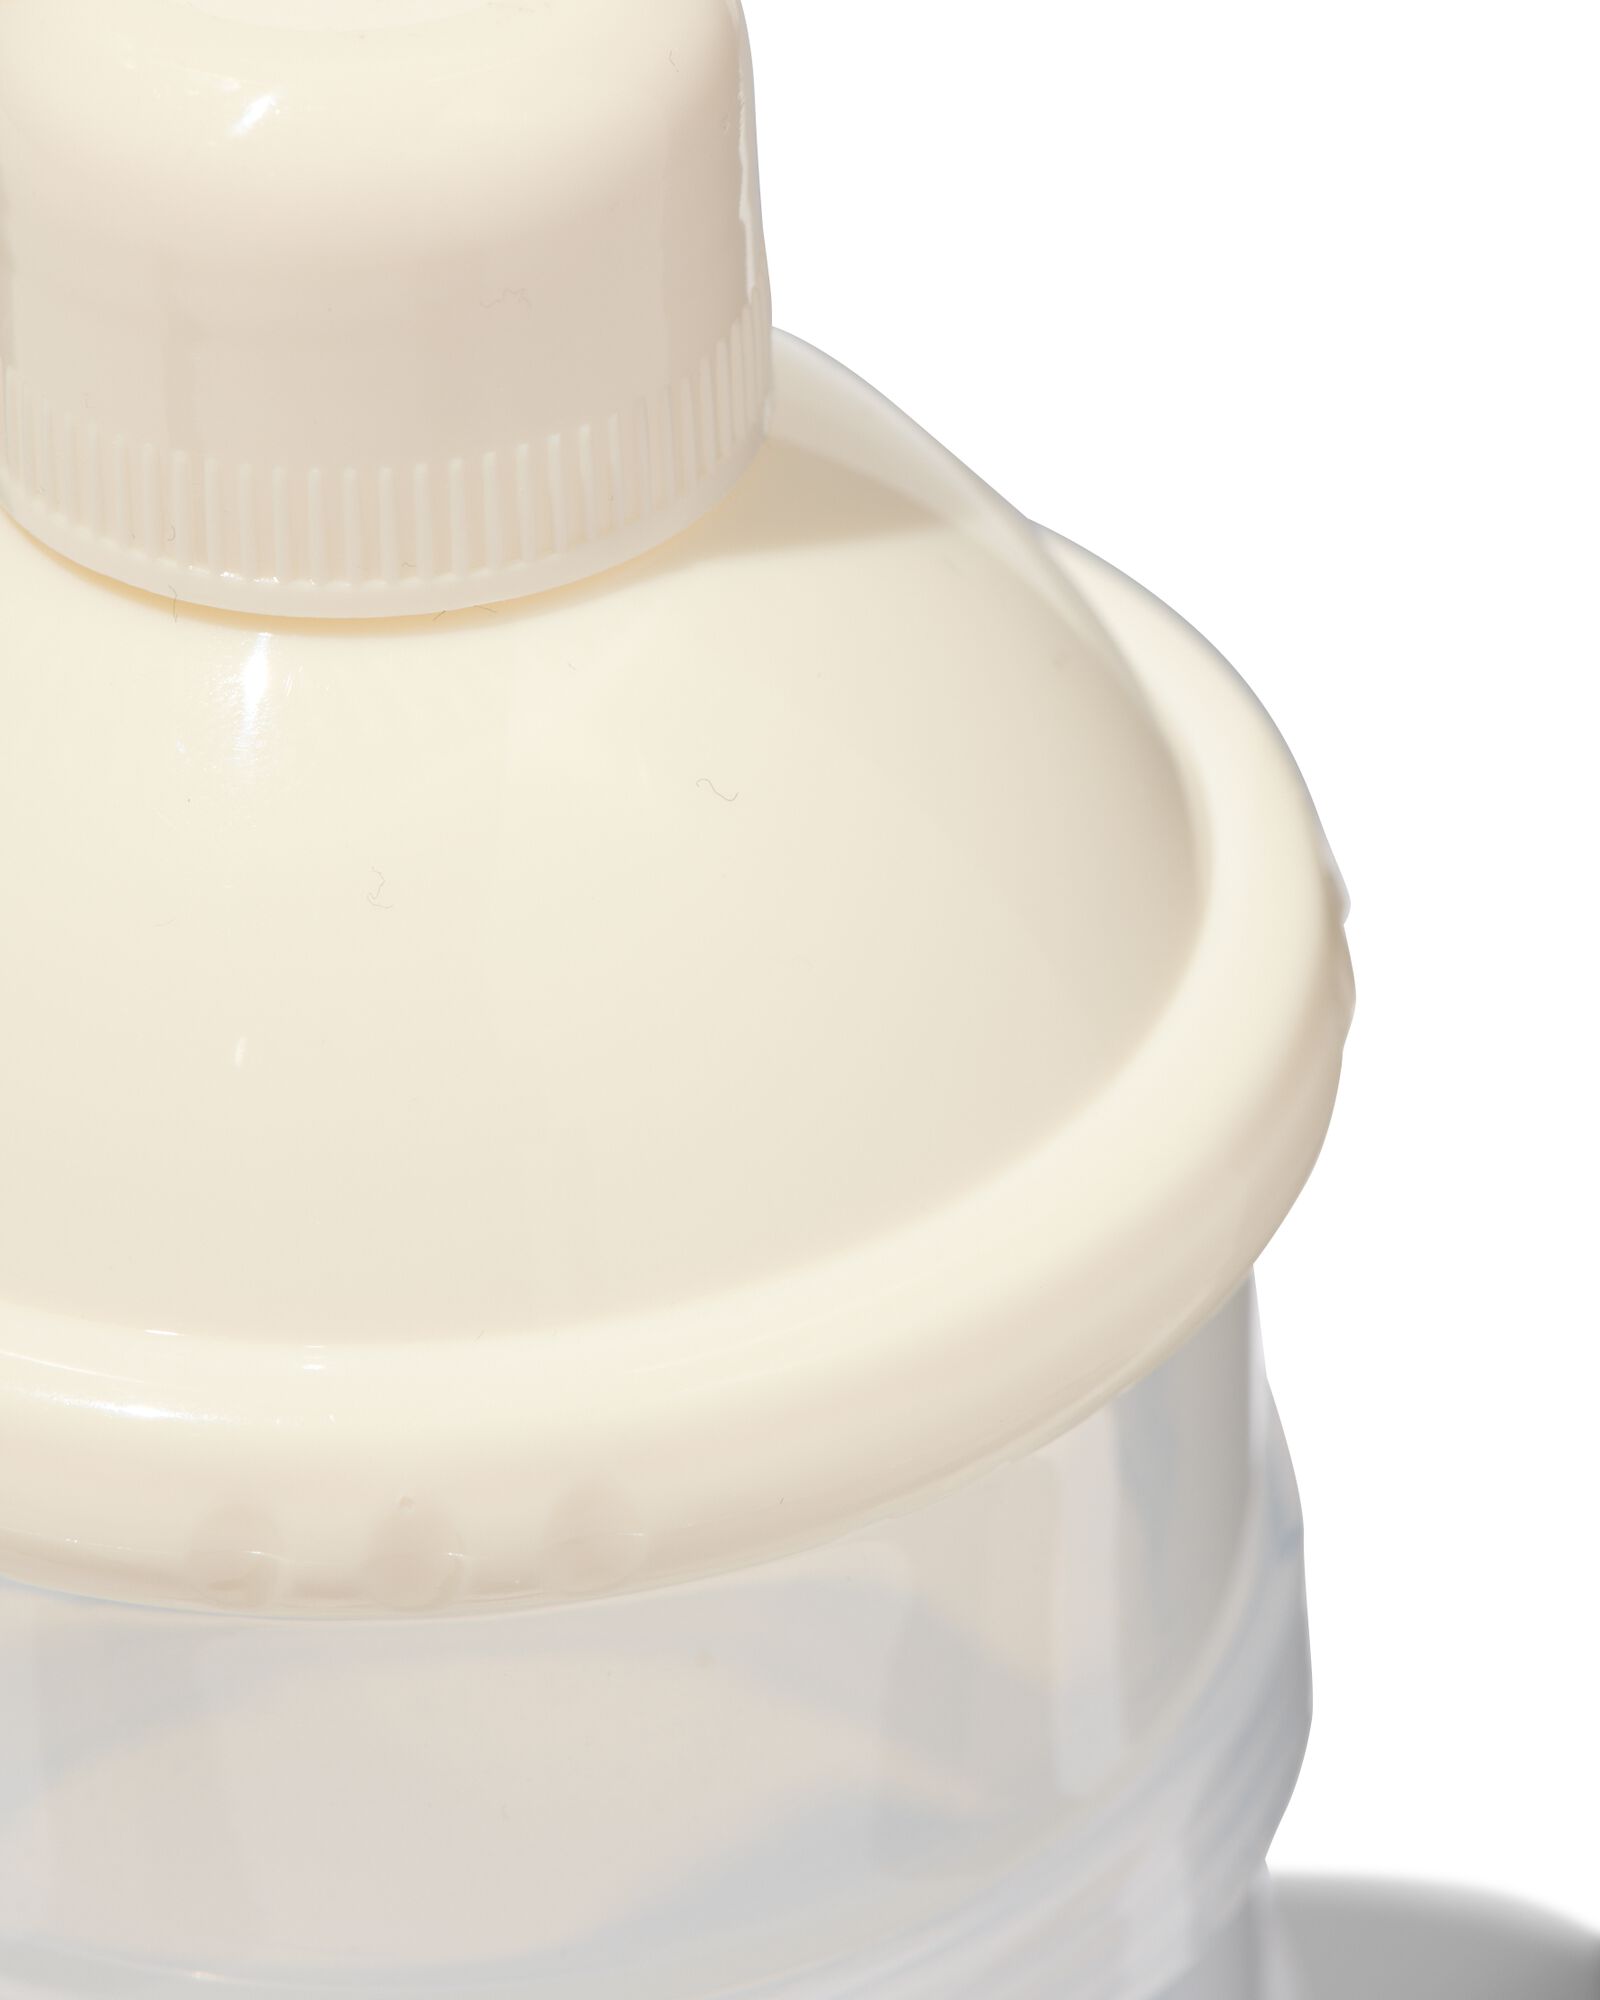 Distributeur de lait en poudre 3 mesures doseur bébé boite doseuse